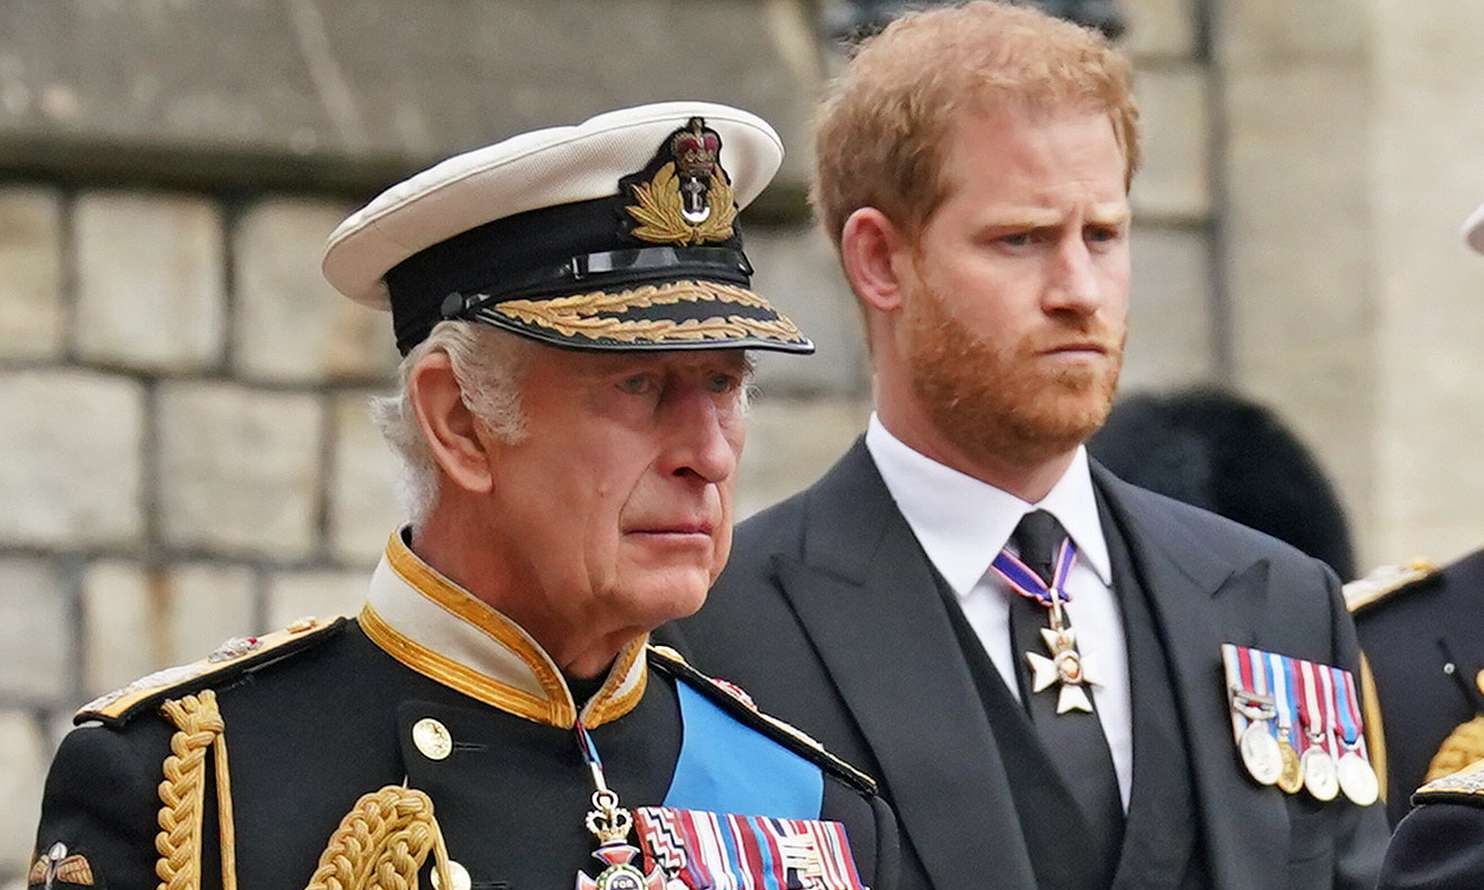 El príncipe Harry y el rey Carlos III están intentando recomponer su relación